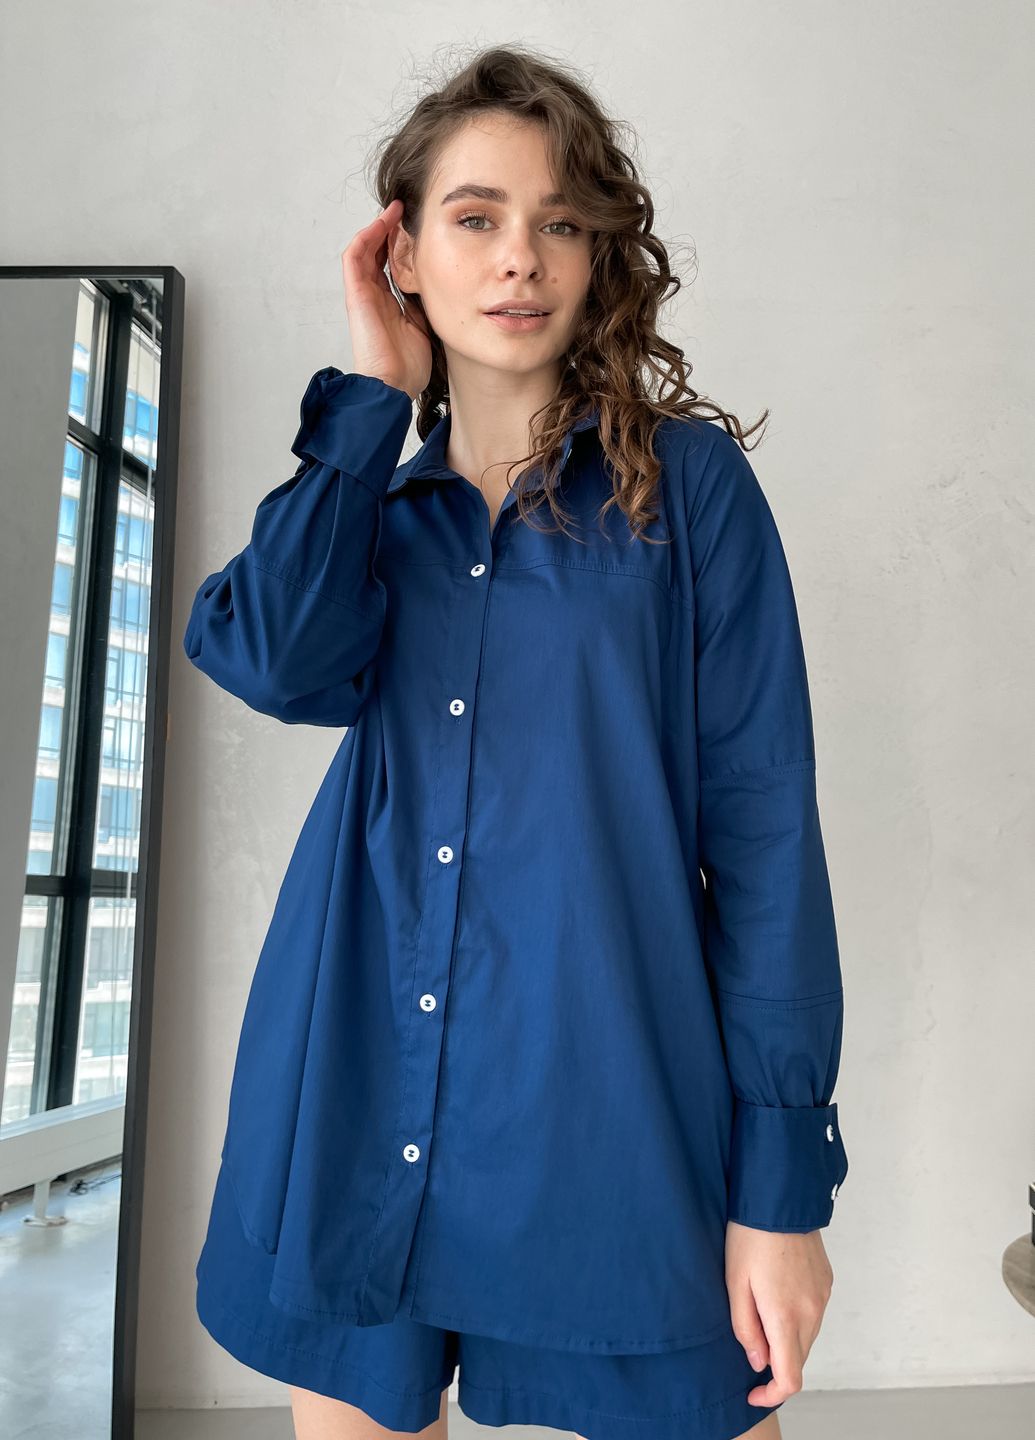 Купить Оверсайз хлопковая рубашка женская Merlini Белиз 200000224, размер 42-44 в интернет-магазине